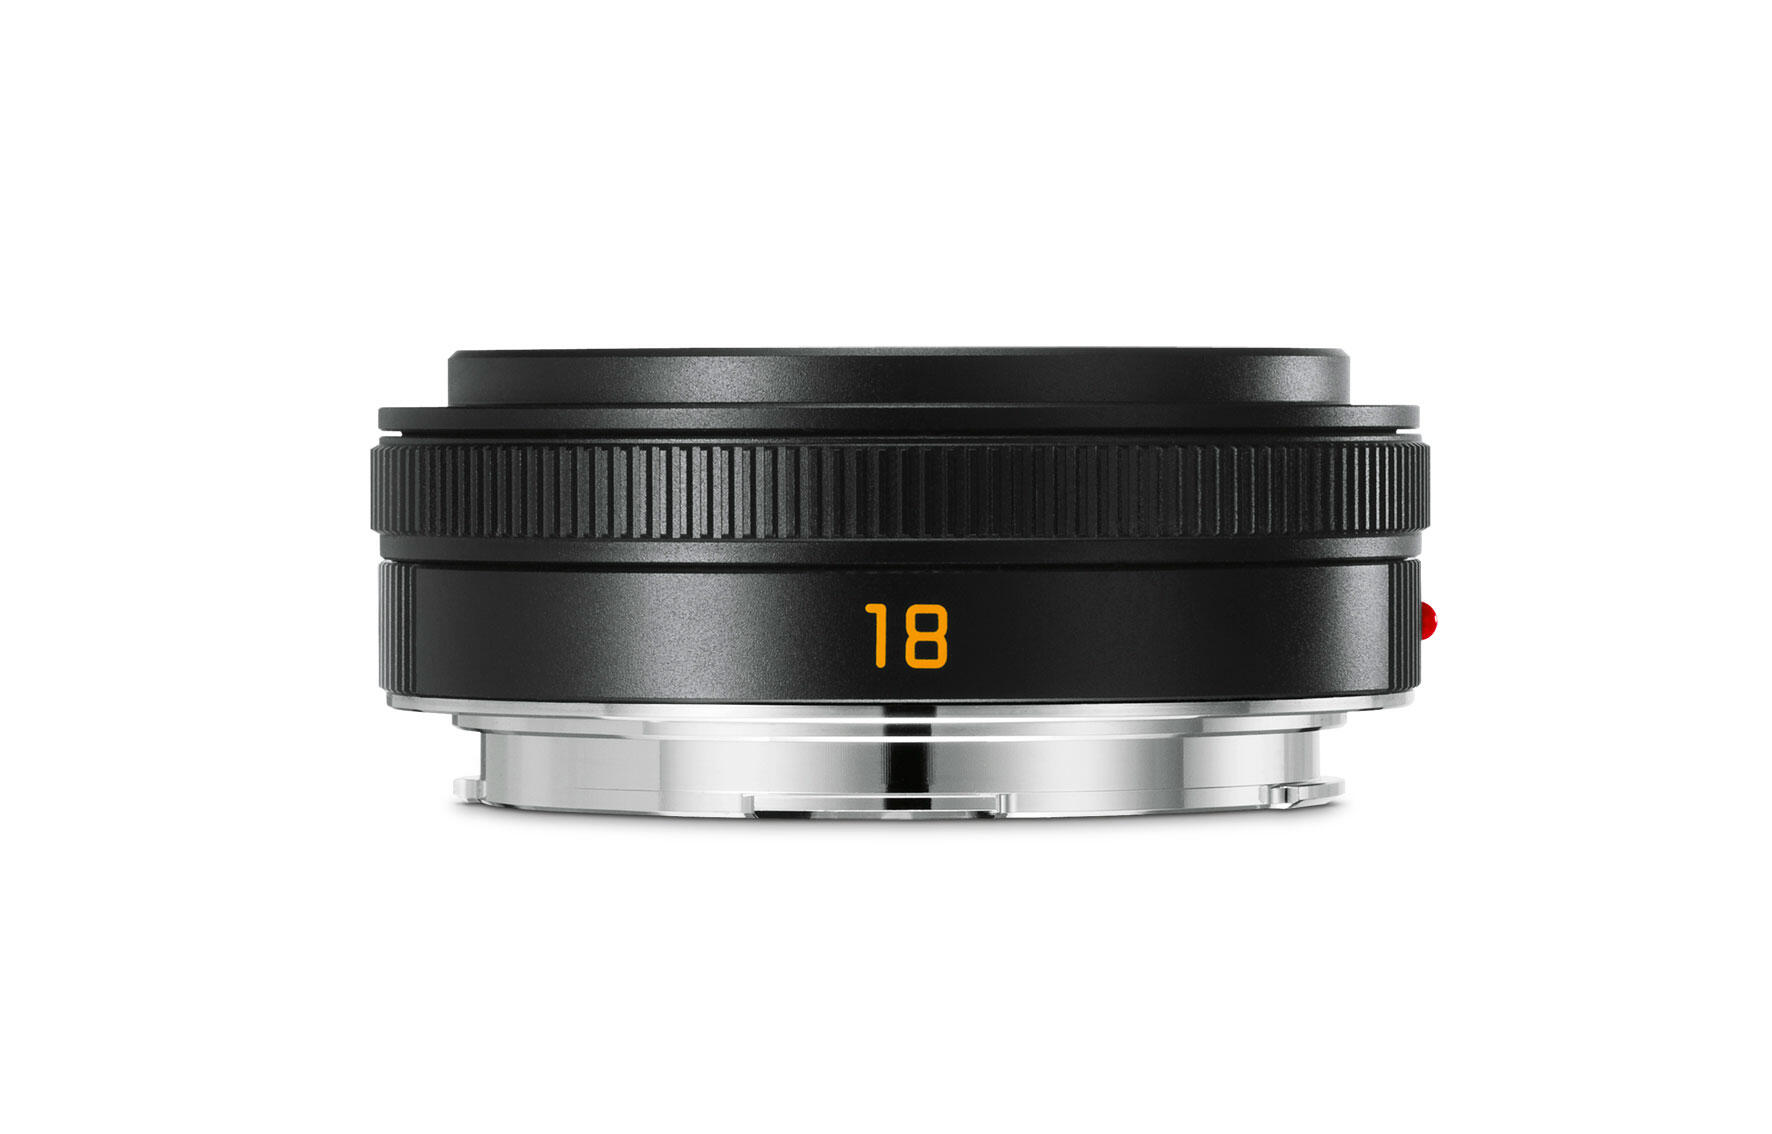 Elmarit-TL 18 f/2.8 ASPH. | Leica Camera AG